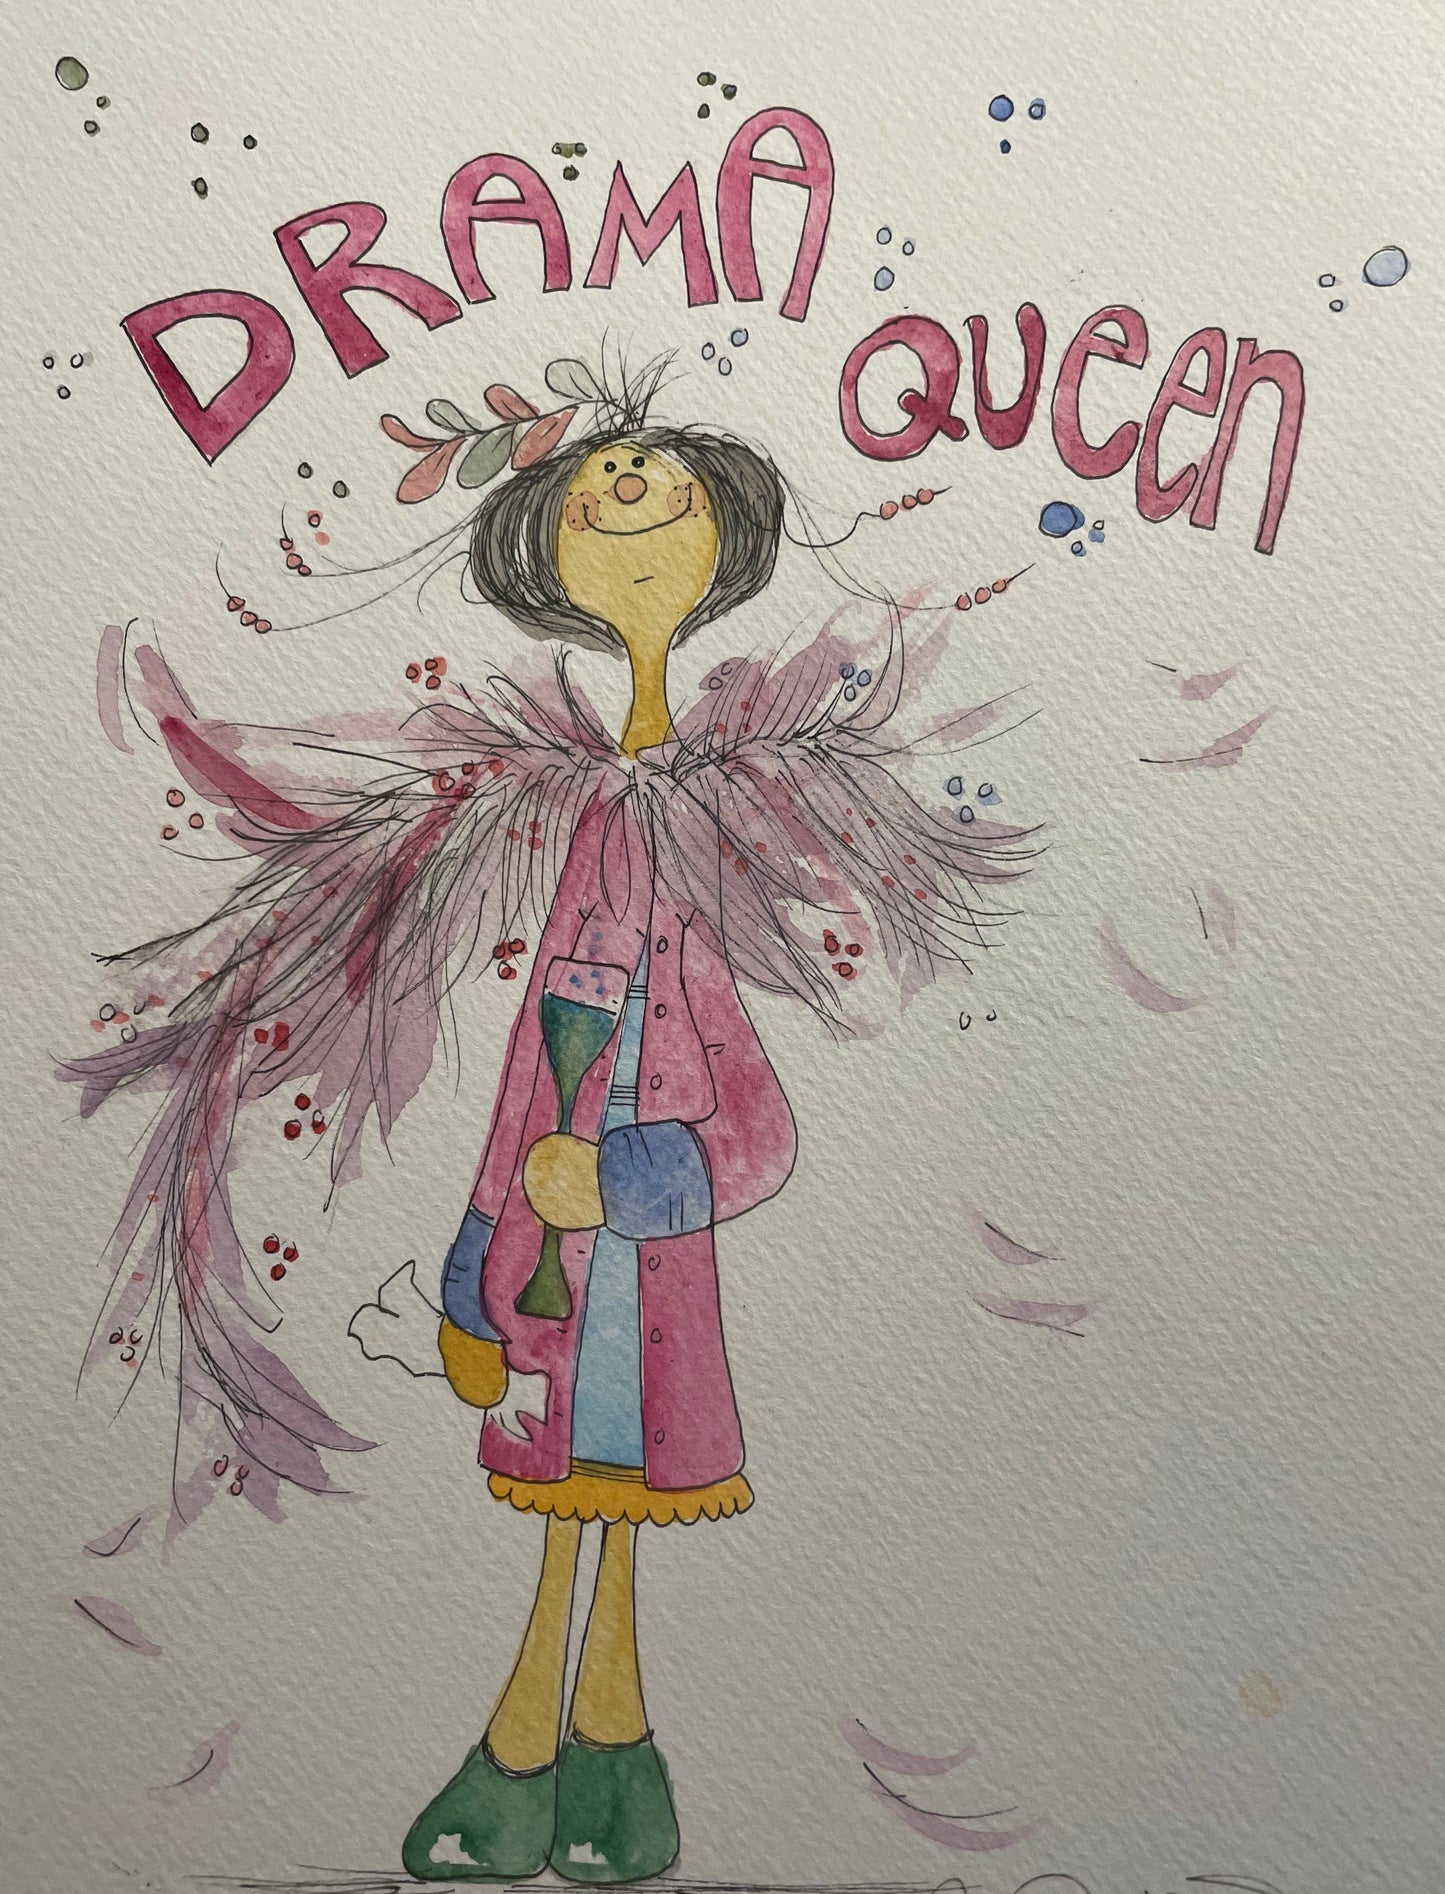 "Drama Queen"